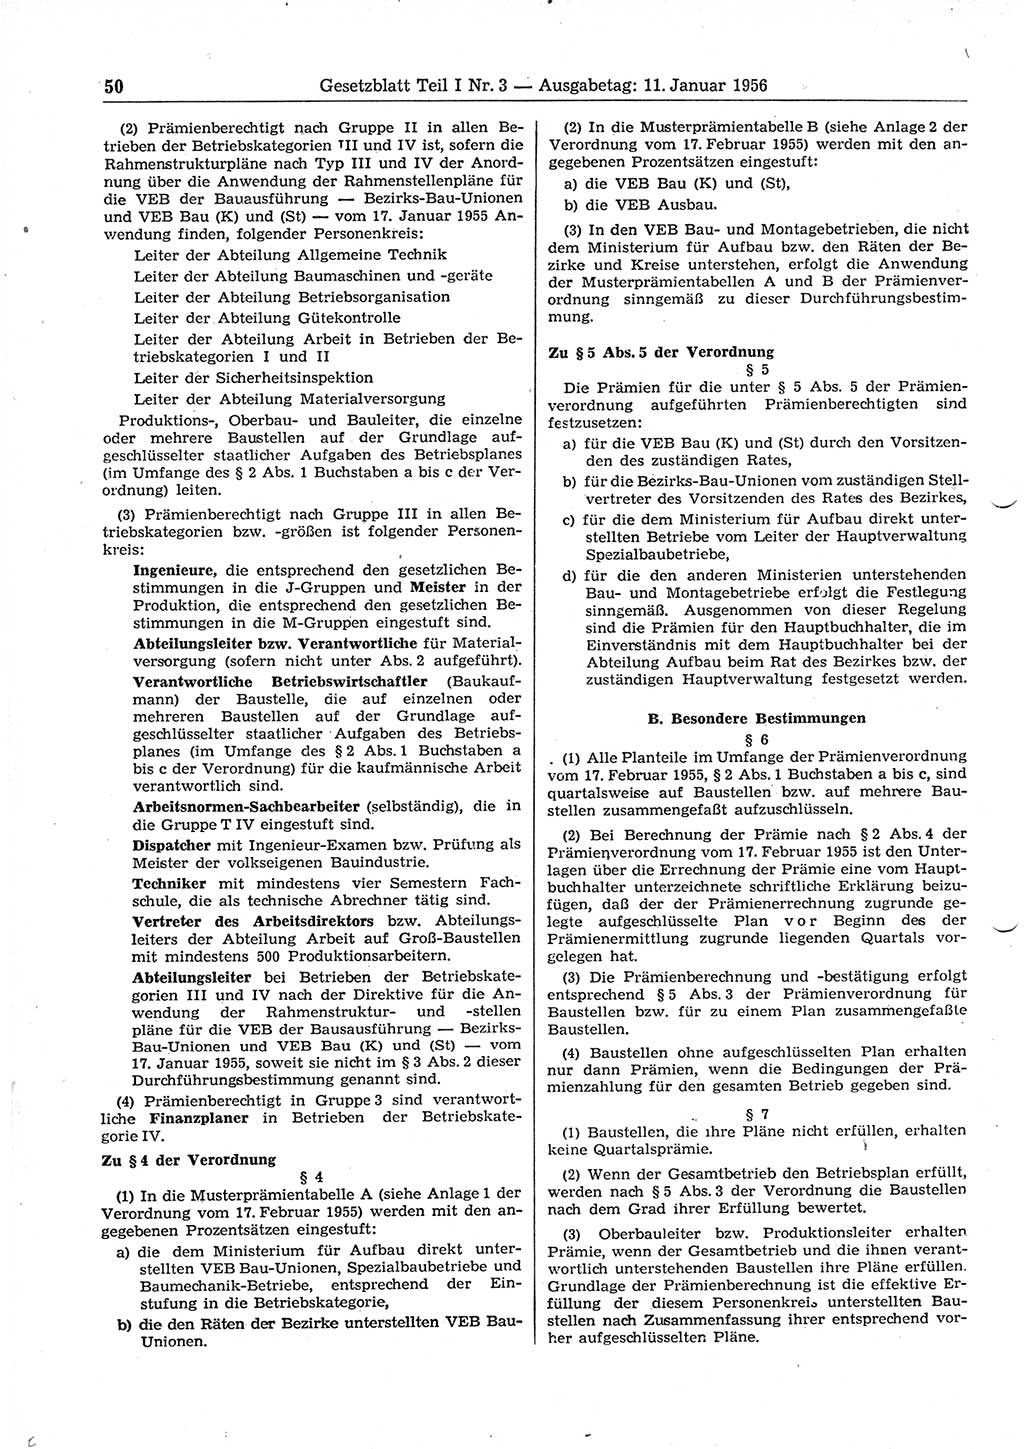 Gesetzblatt (GBl.) der Deutschen Demokratischen Republik (DDR) Teil Ⅰ 1956, Seite 50 (GBl. DDR Ⅰ 1956, S. 50)